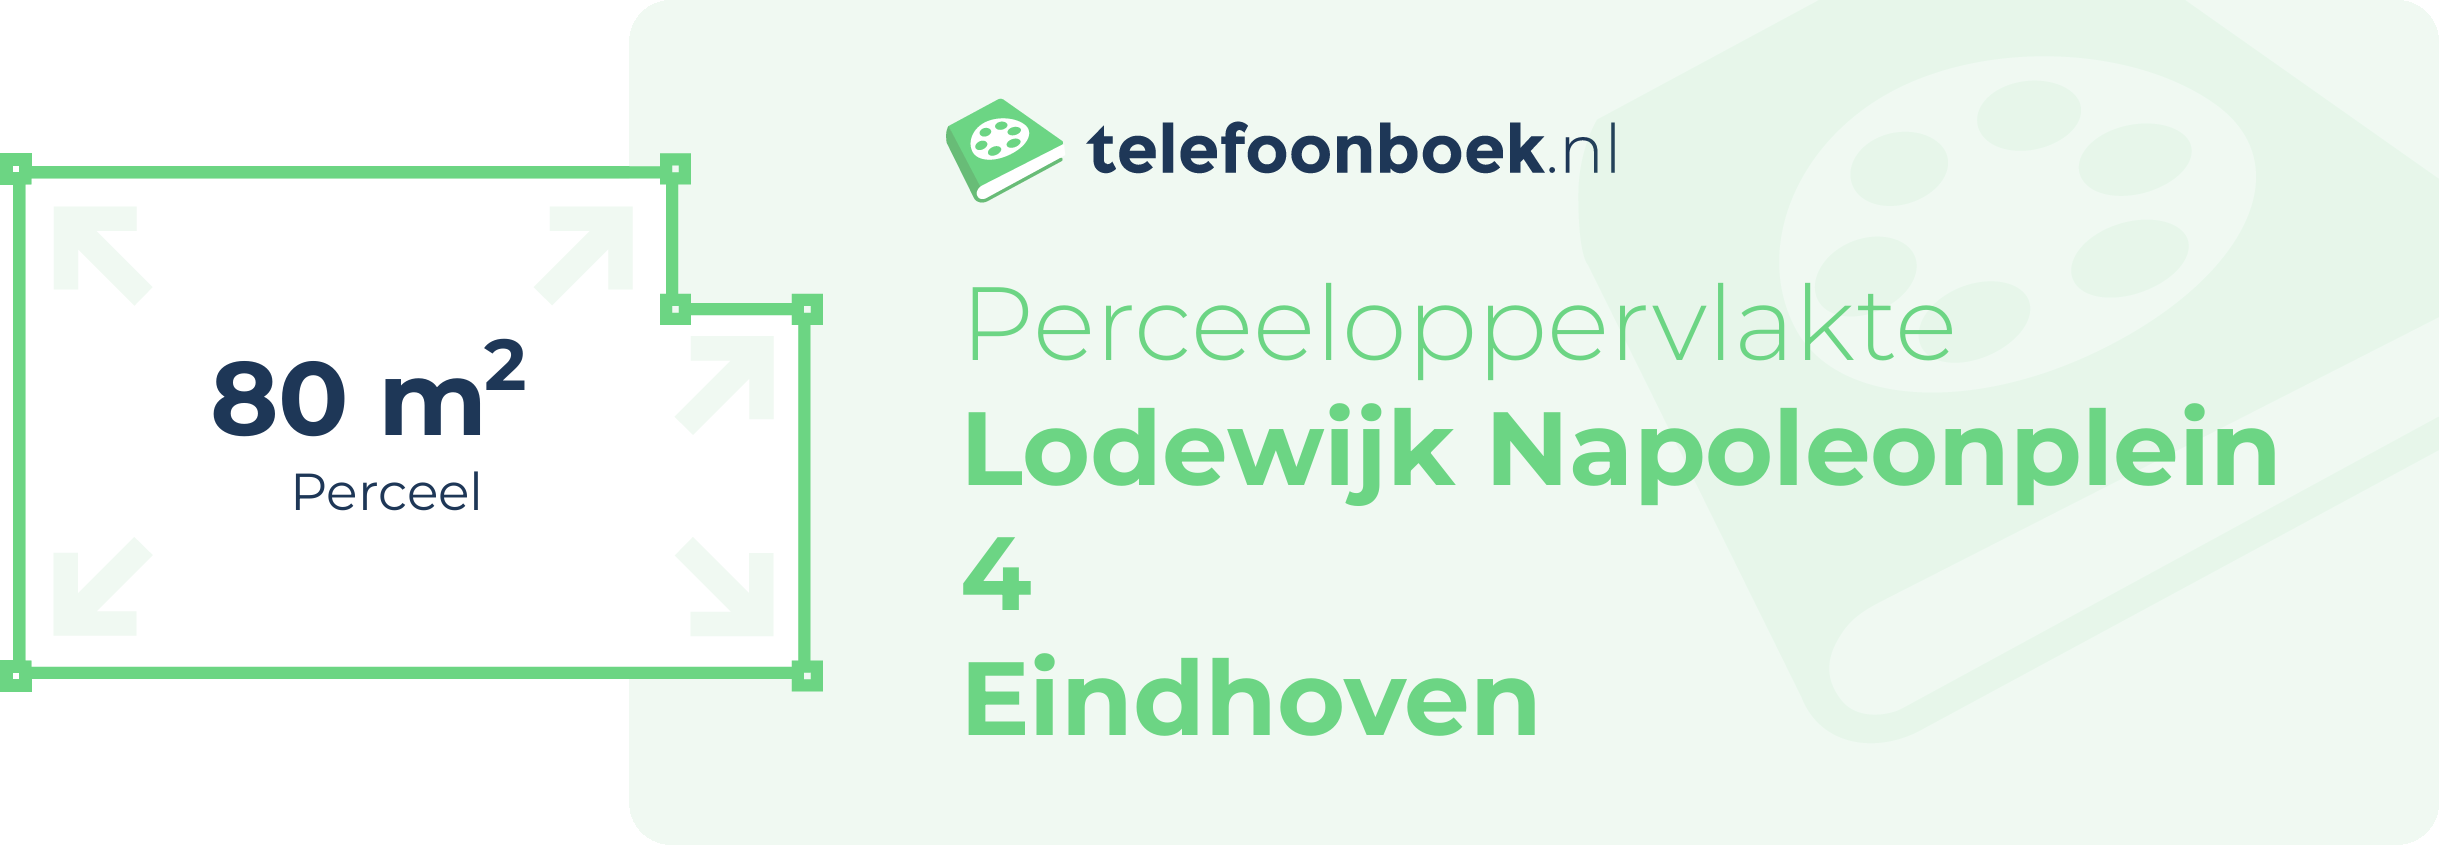 Perceeloppervlakte Lodewijk Napoleonplein 4 Eindhoven